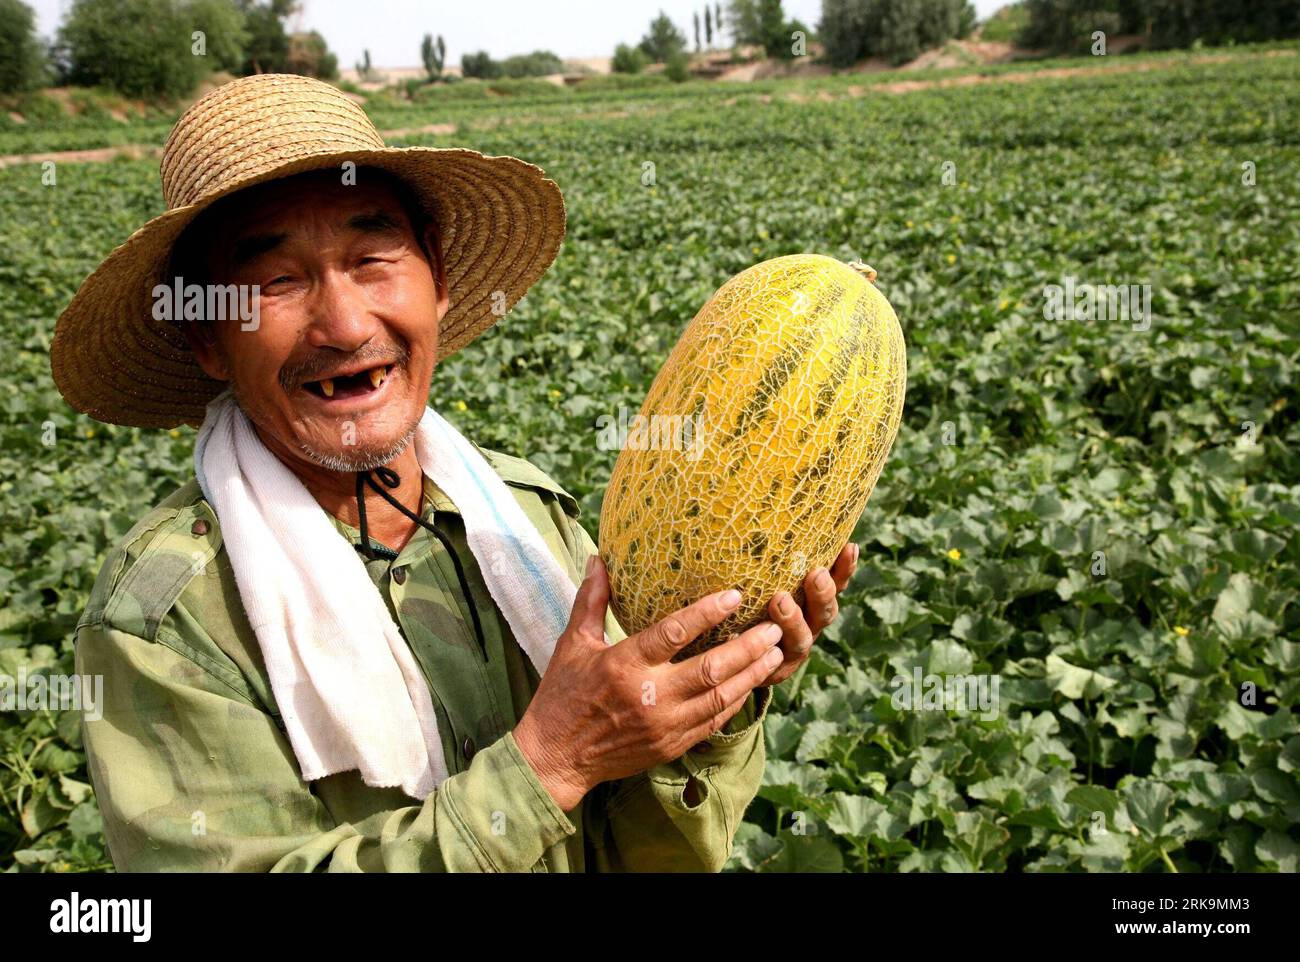 Bildnummer: 54213000  Datum: 06.07.2010  Copyright: imago/Xinhua (100707) -- HAMI, July 7, 2010 (Xinhua) -- A farmer harvests Hami melons, a popular cantaloupe in Xinjiang,at Nanhu Township in Hami, northwest China s Xinjiang Uygur Autonomous Region, July 6, 2010. . (Xinhua/Cai Zengle) (wqq) (CN) PUBLICATIONxNOTxINxCHN Gesellschaft Wirtschaft Landwirtschaft Arbeitswelten Bauern Feldarbeit Ernte Land und Leute kbdig xdp 2010 quer o0 Melone Melonen Melonenernte    Bildnummer 54213000 Date 06 07 2010 Copyright Imago XINHUA  Hami July 7 2010 XINHUA a Farmer Harvests Hami melons a Popular Cantaloup Stock Photo